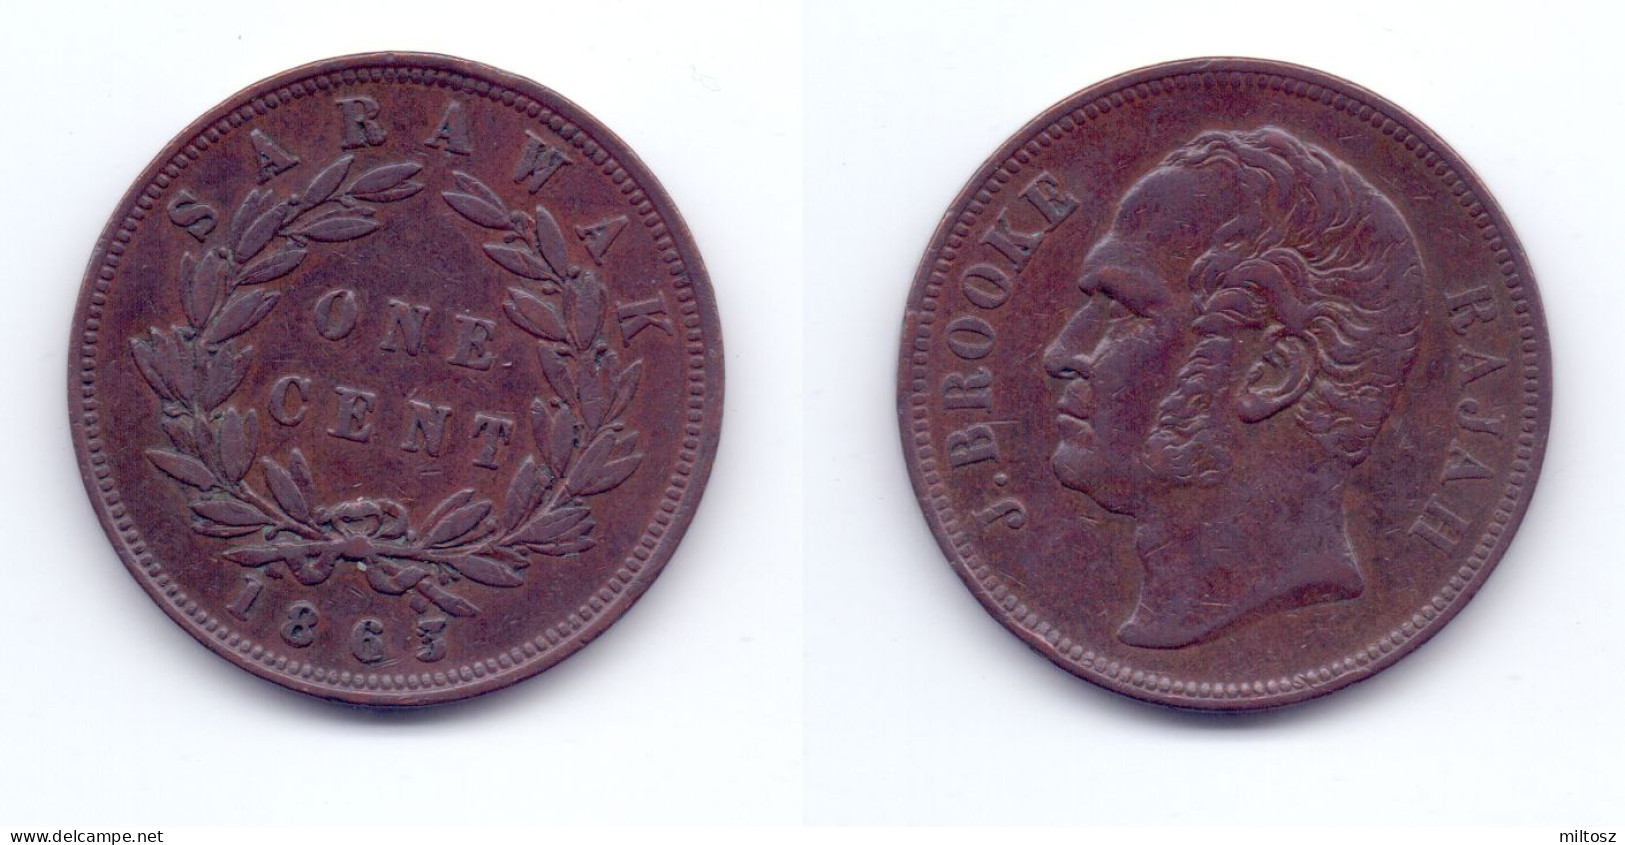 Sarawak 1 Cent 1863 - Malaysia